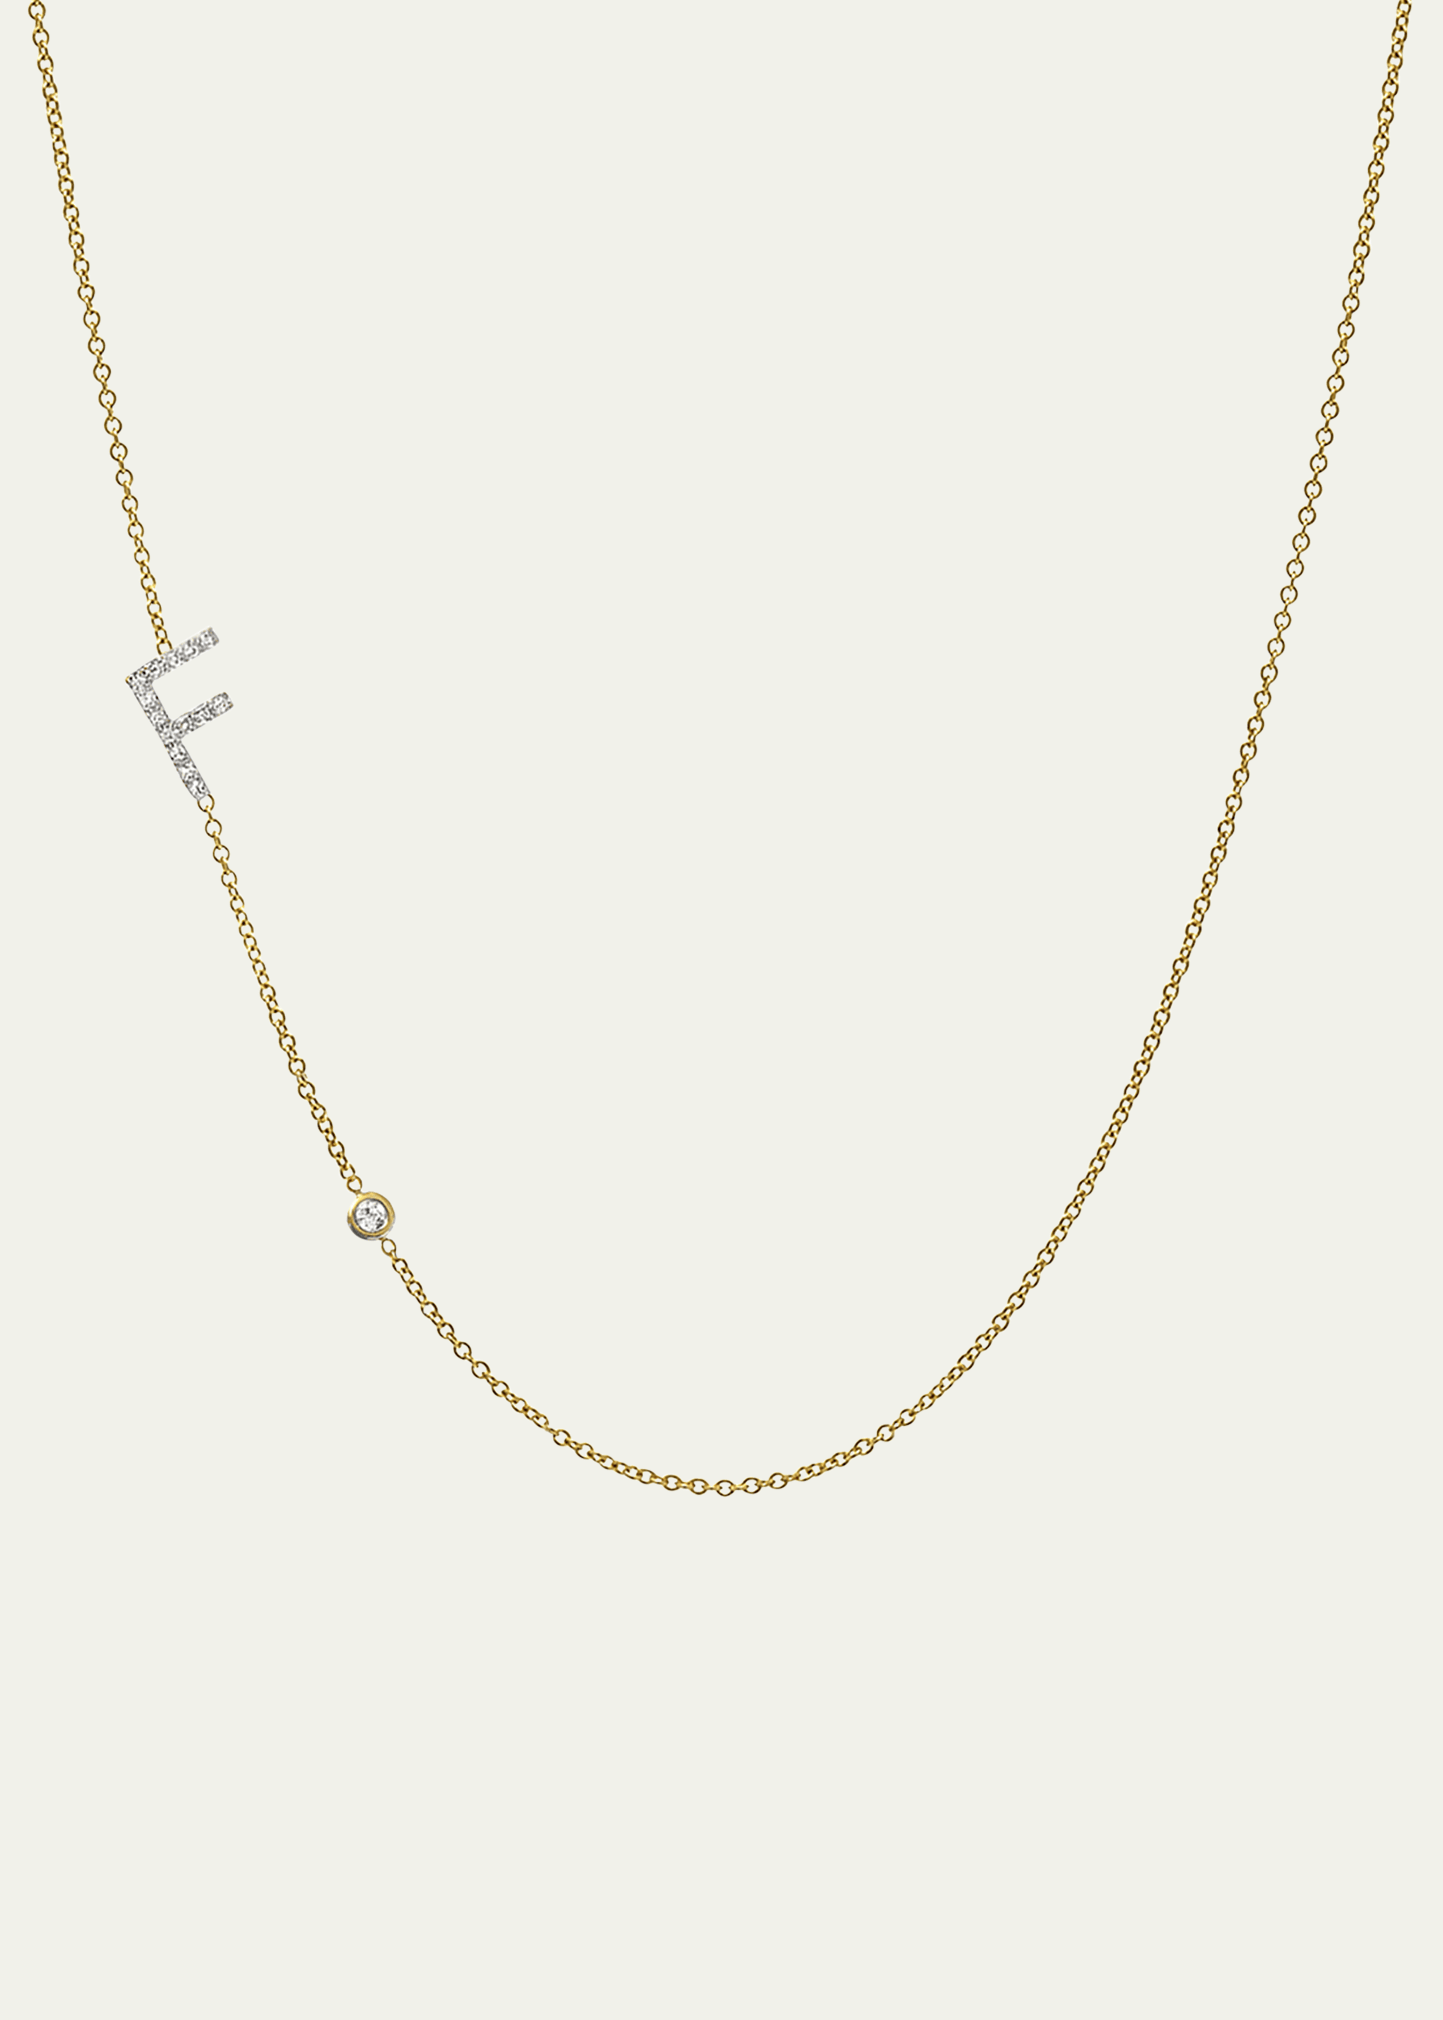 Zoe Lev Jewelry 14k Yellow Gold Diamond Initial F Necklace